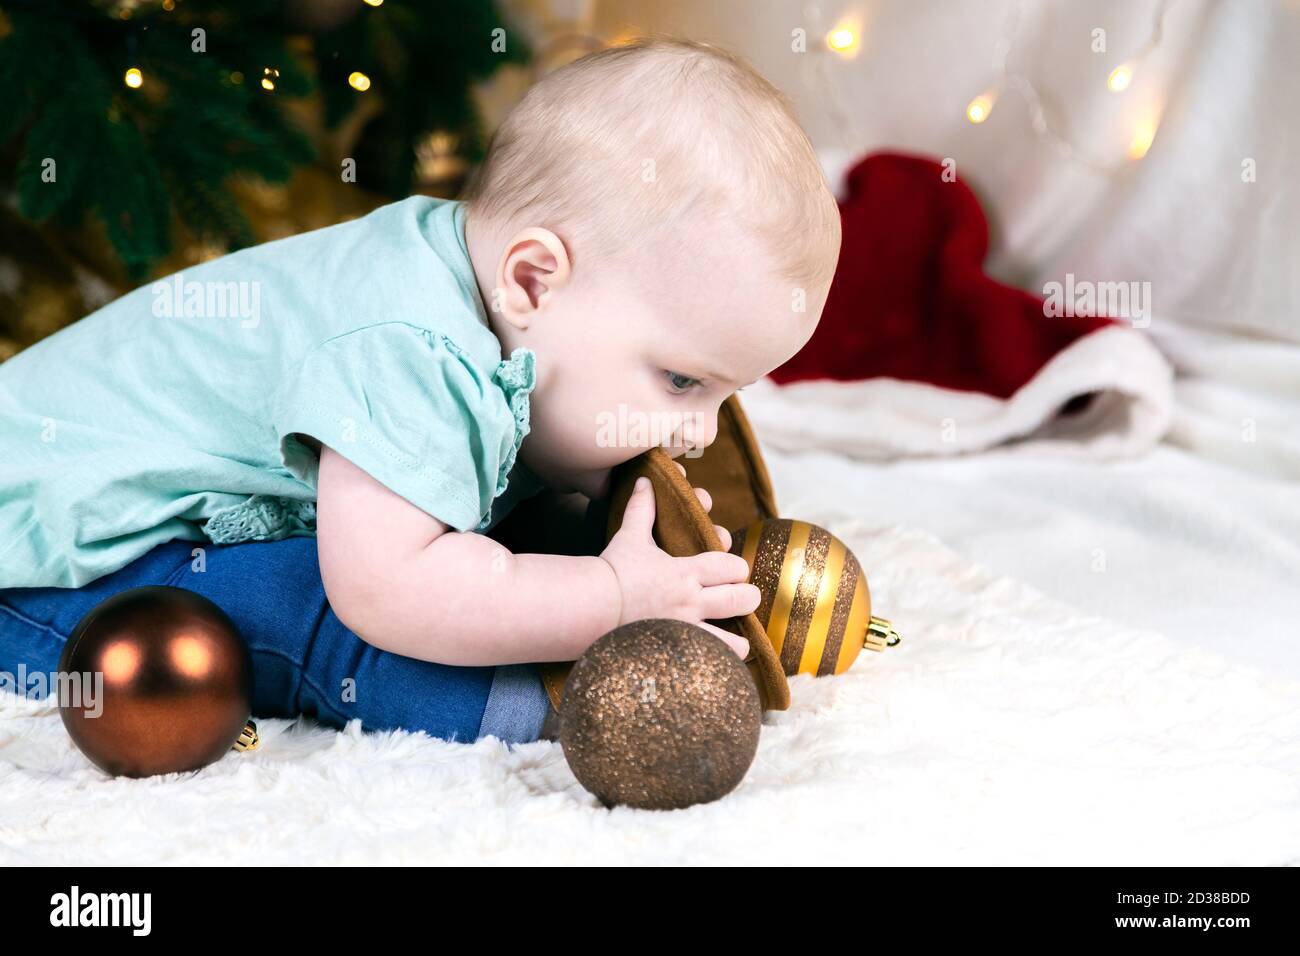 Bébé en jeans et chaussures se trouve près d'un arbre de Noël, des balles  de jouets se trouvent autour. L'enfant joue avec sa jambe Photo Stock -  Alamy